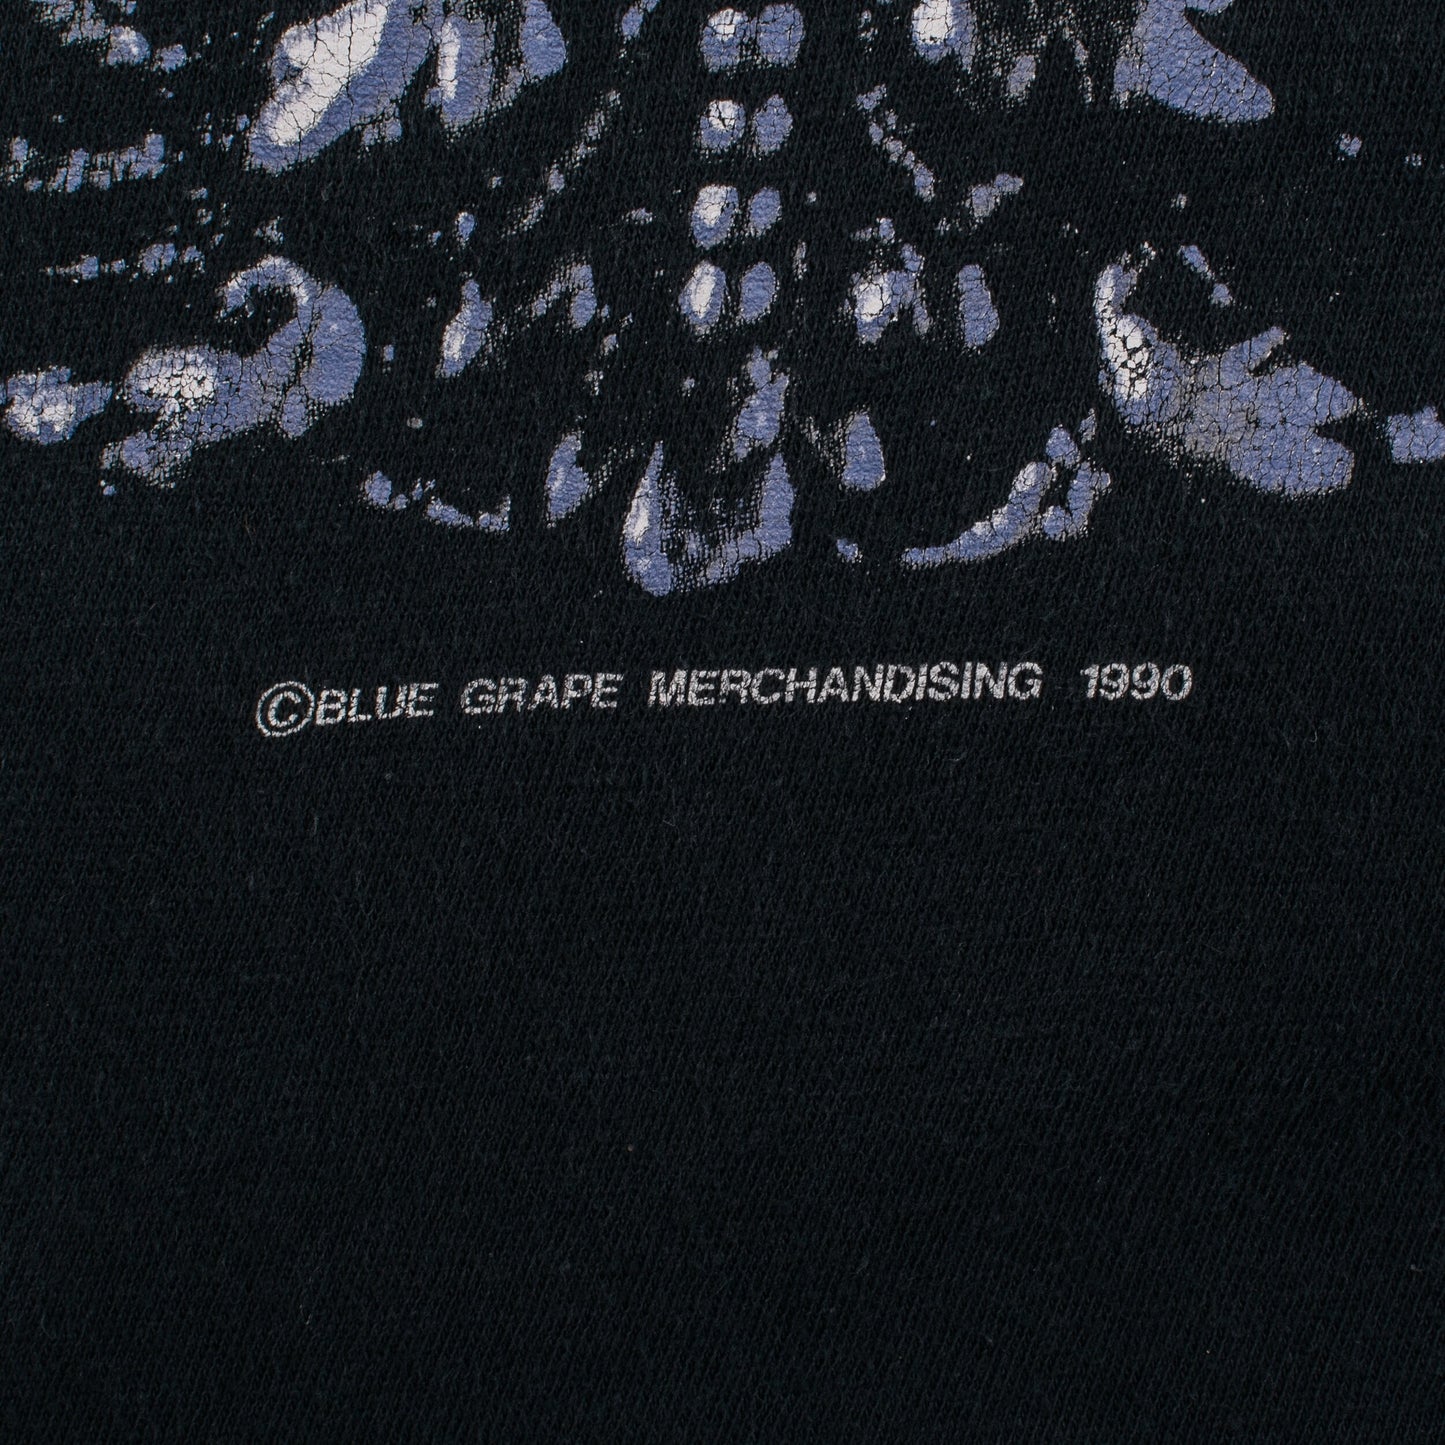 Vintage 1990 Deicide T-Shirt